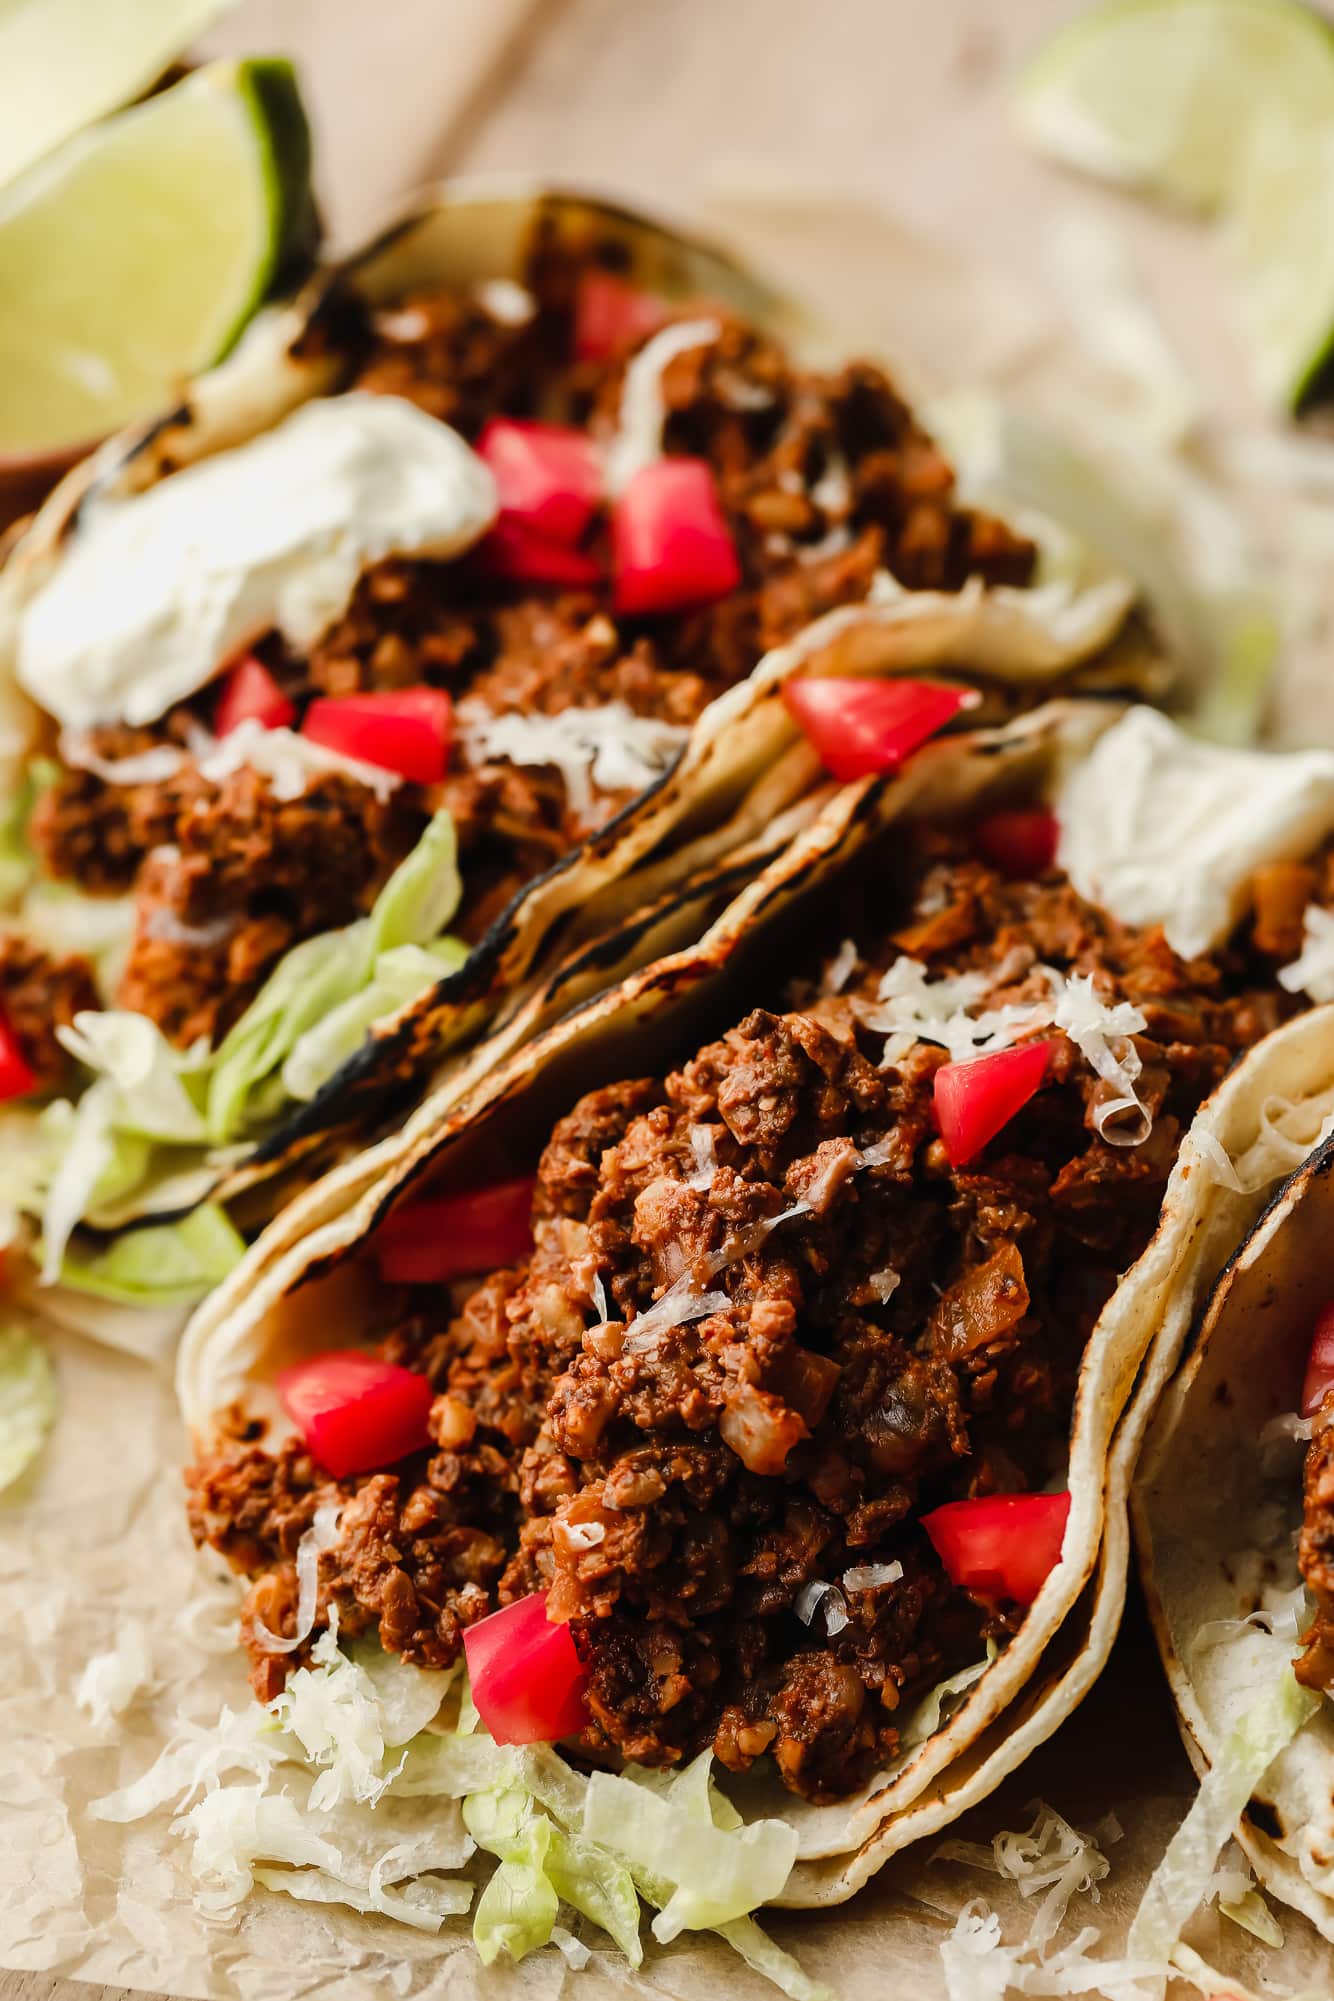 Nahaufnahme von veganen Tacos, gefüllt mit nussigem Pilzfleisch, Tomaten und Salat.